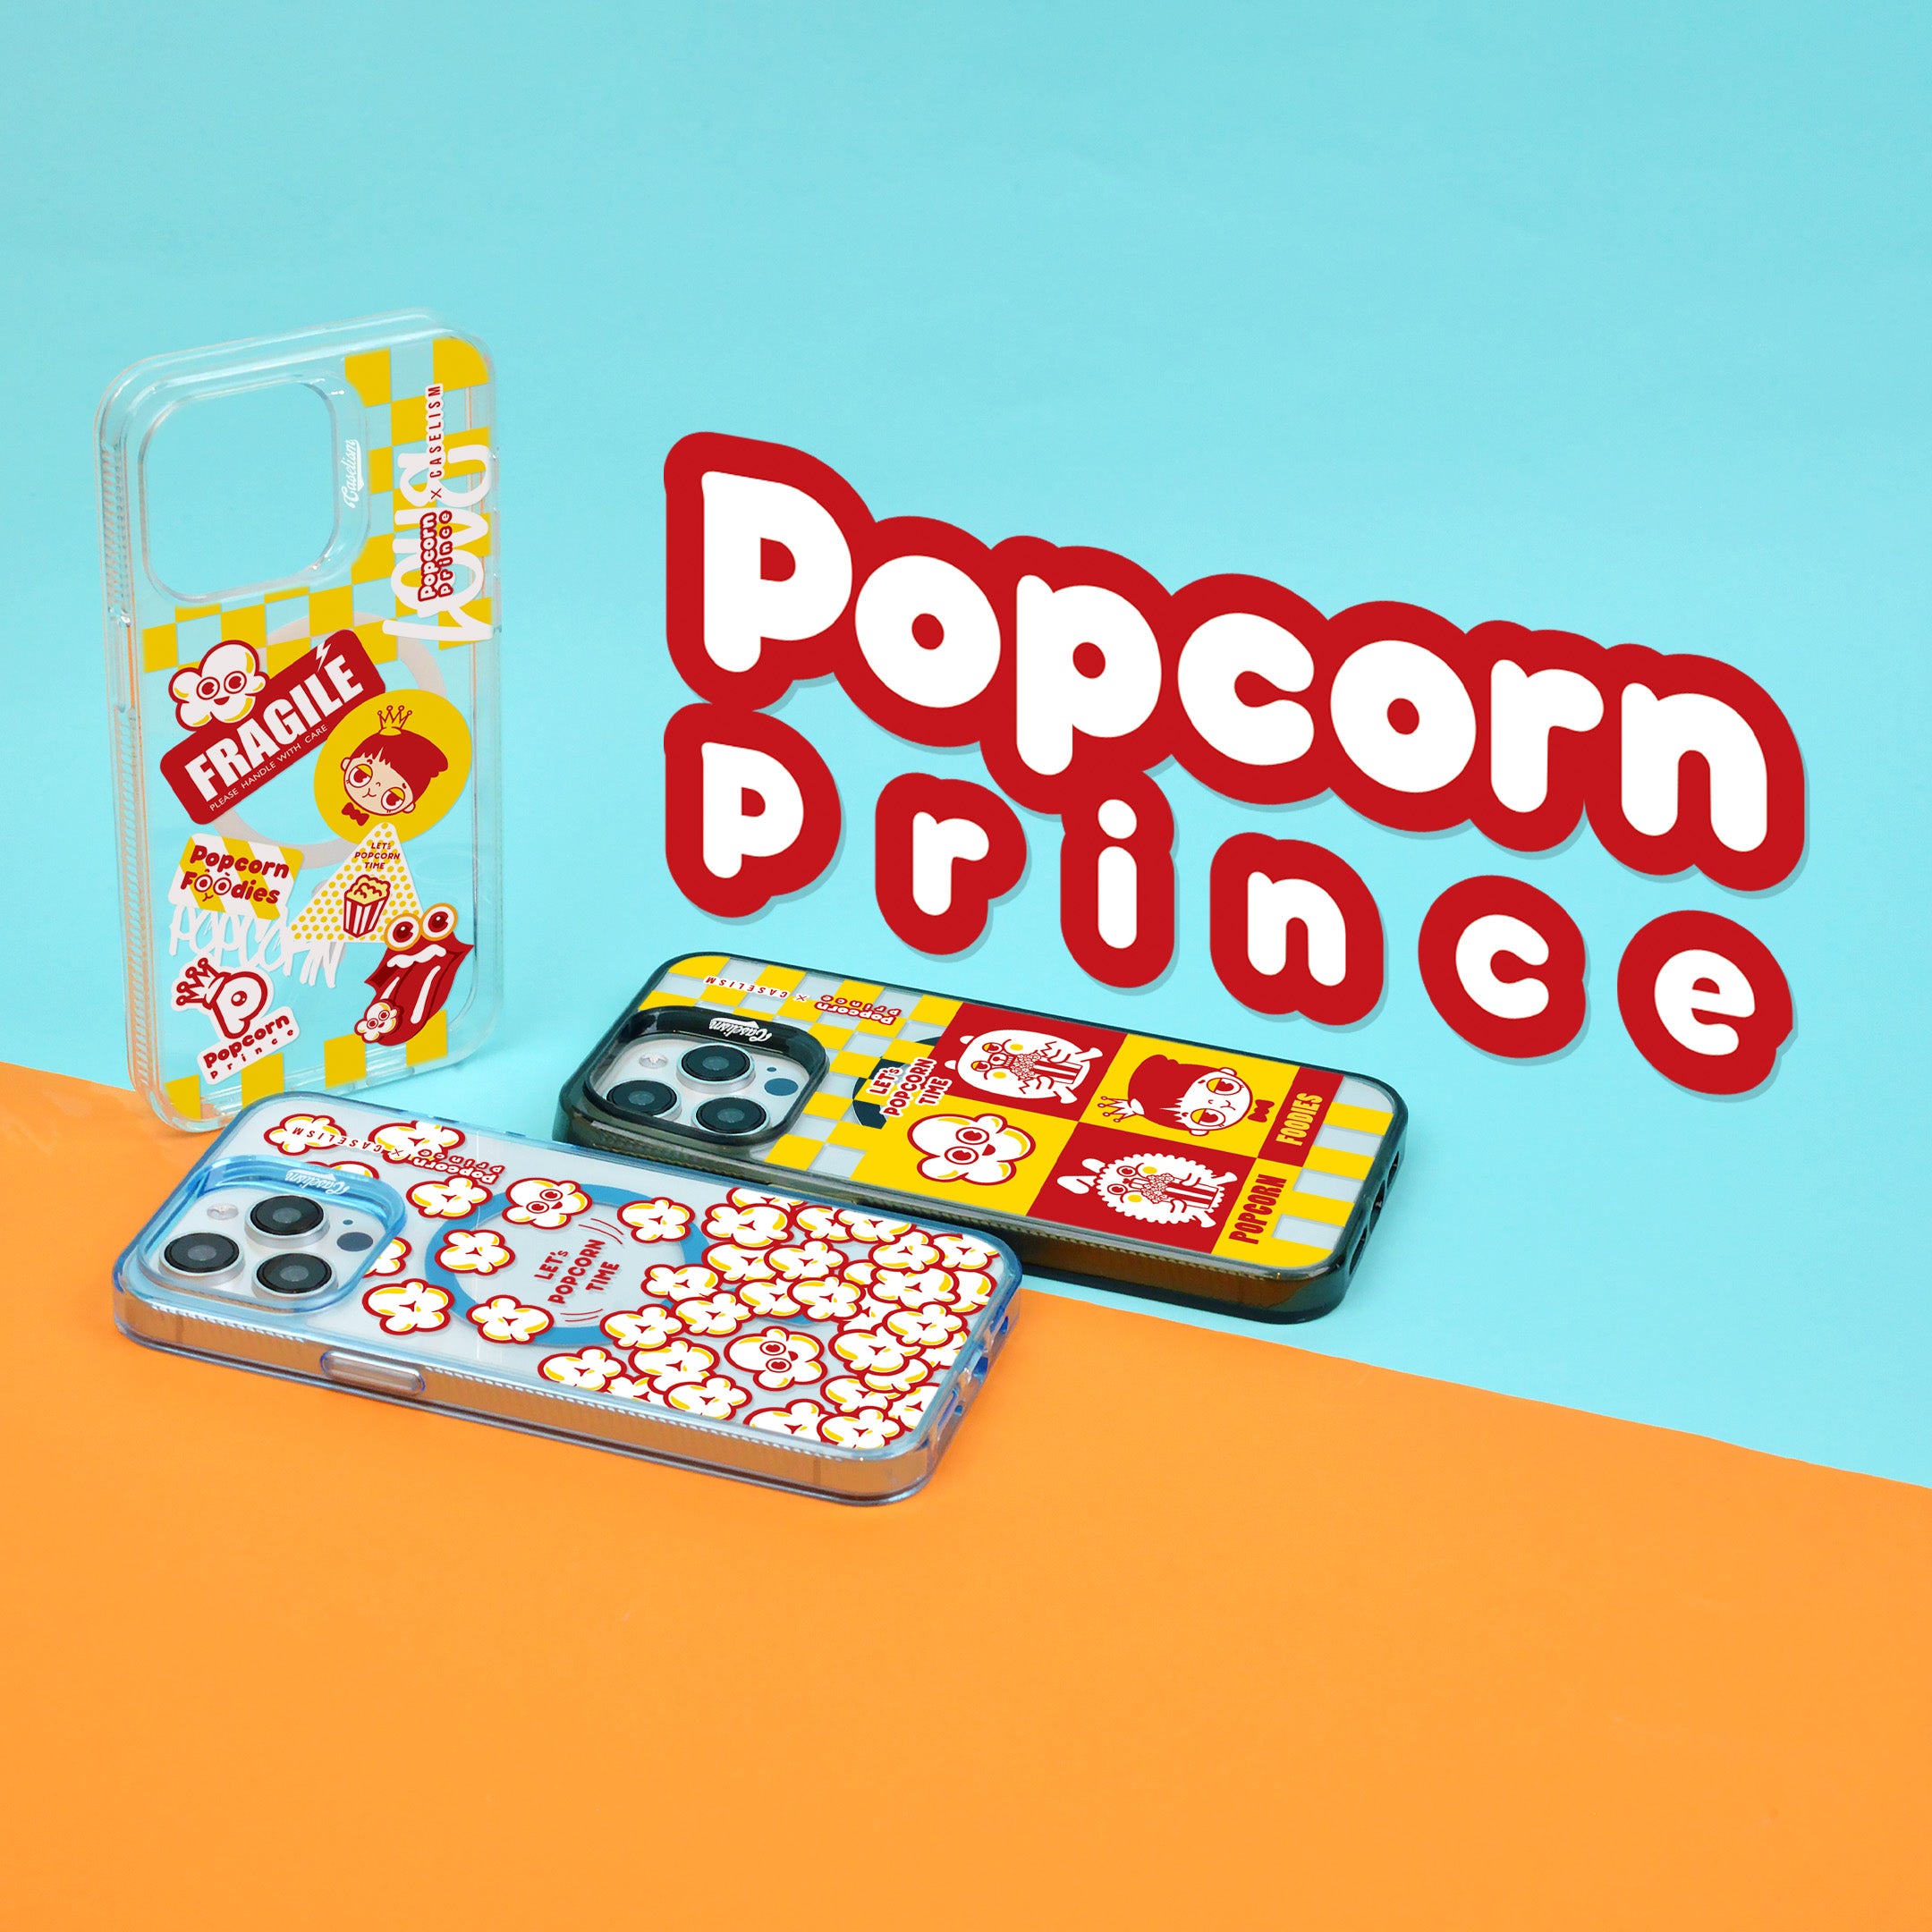 Popcorn Prince